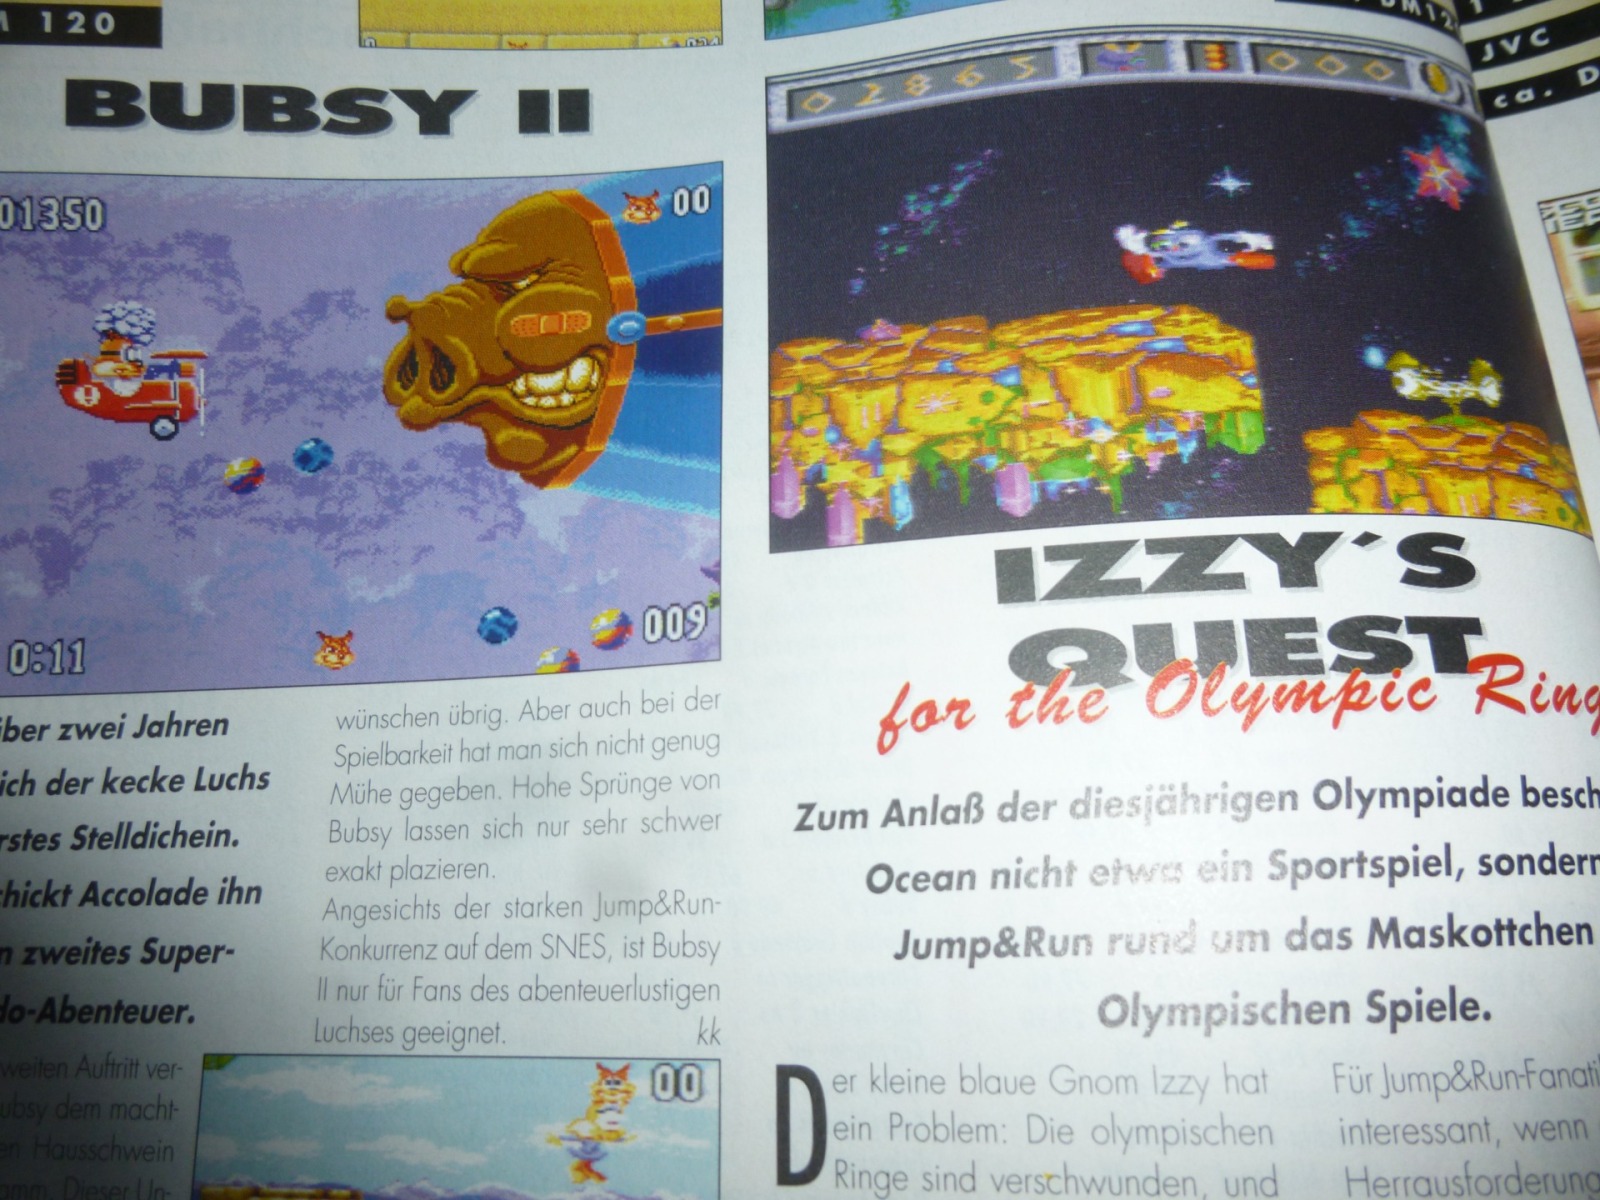 TOTAL Das unabhängige Magazin - 100 Nintendo - Ausgabe 3/96 1996 14